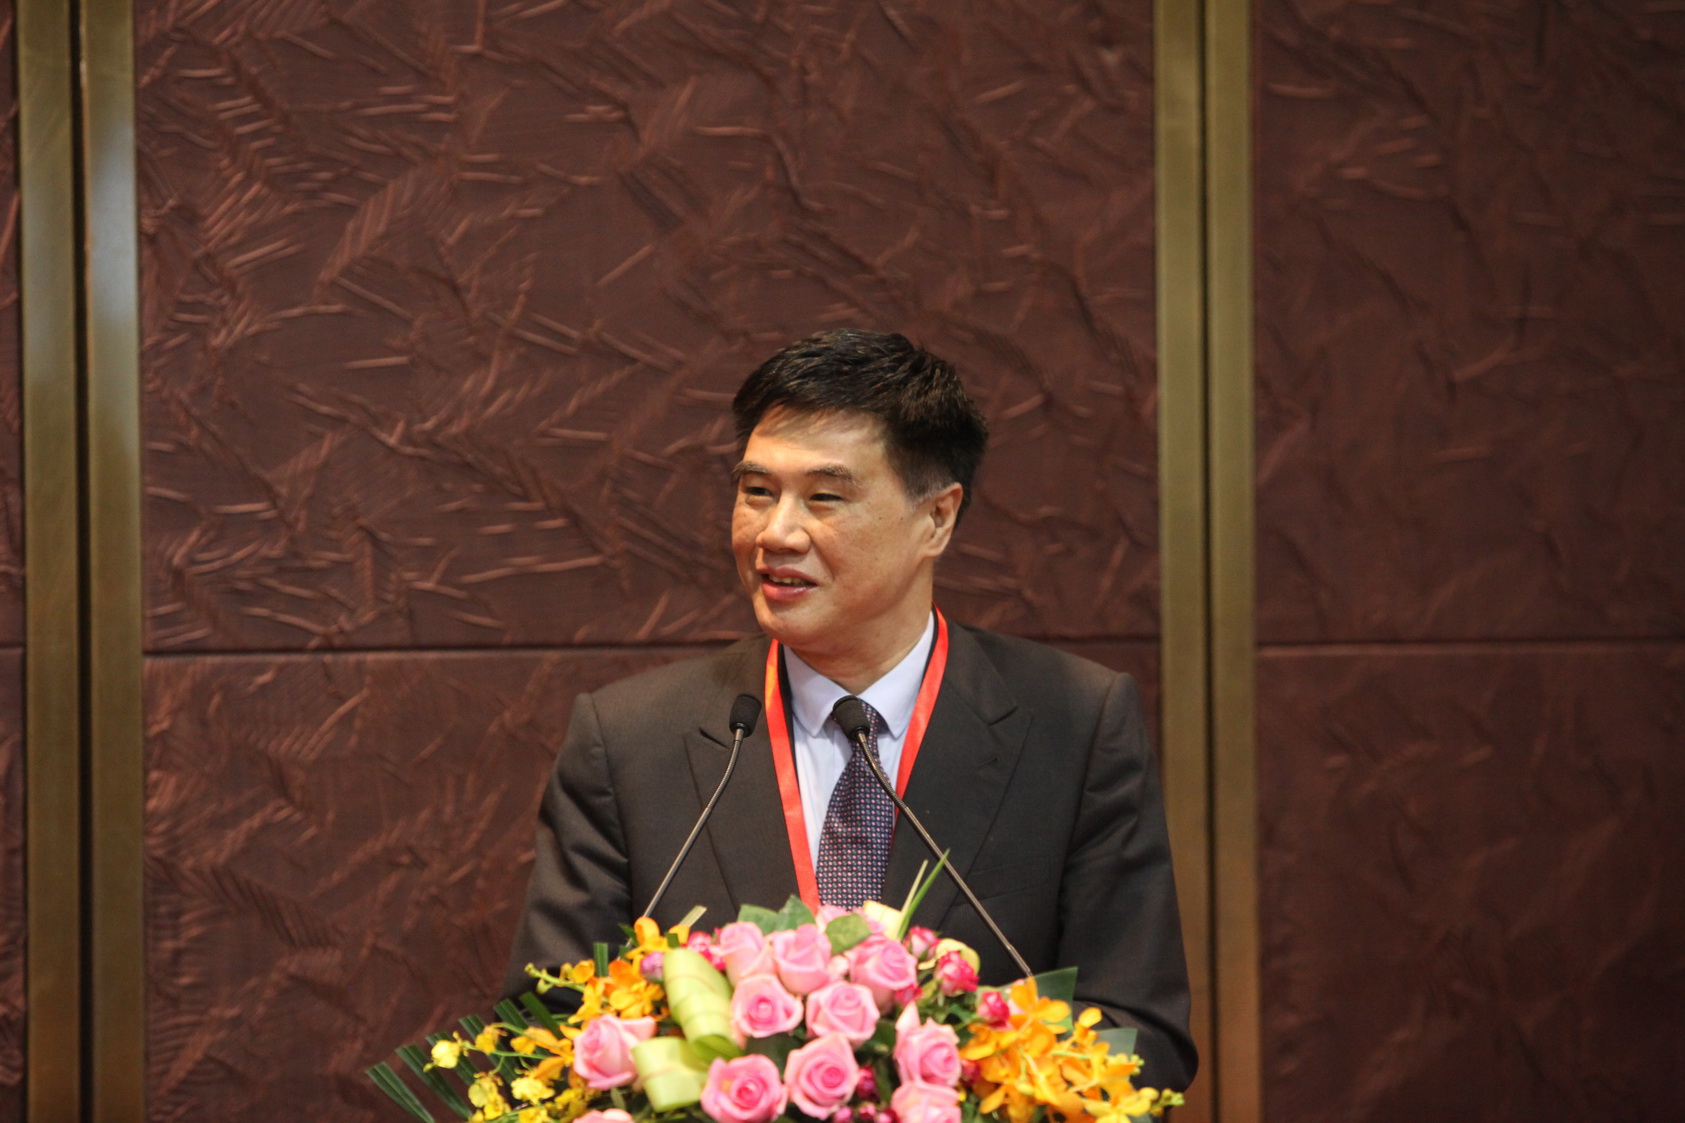 Zhang Xiaoqiang, Executive Vice Chairman and CEO of CCIEE